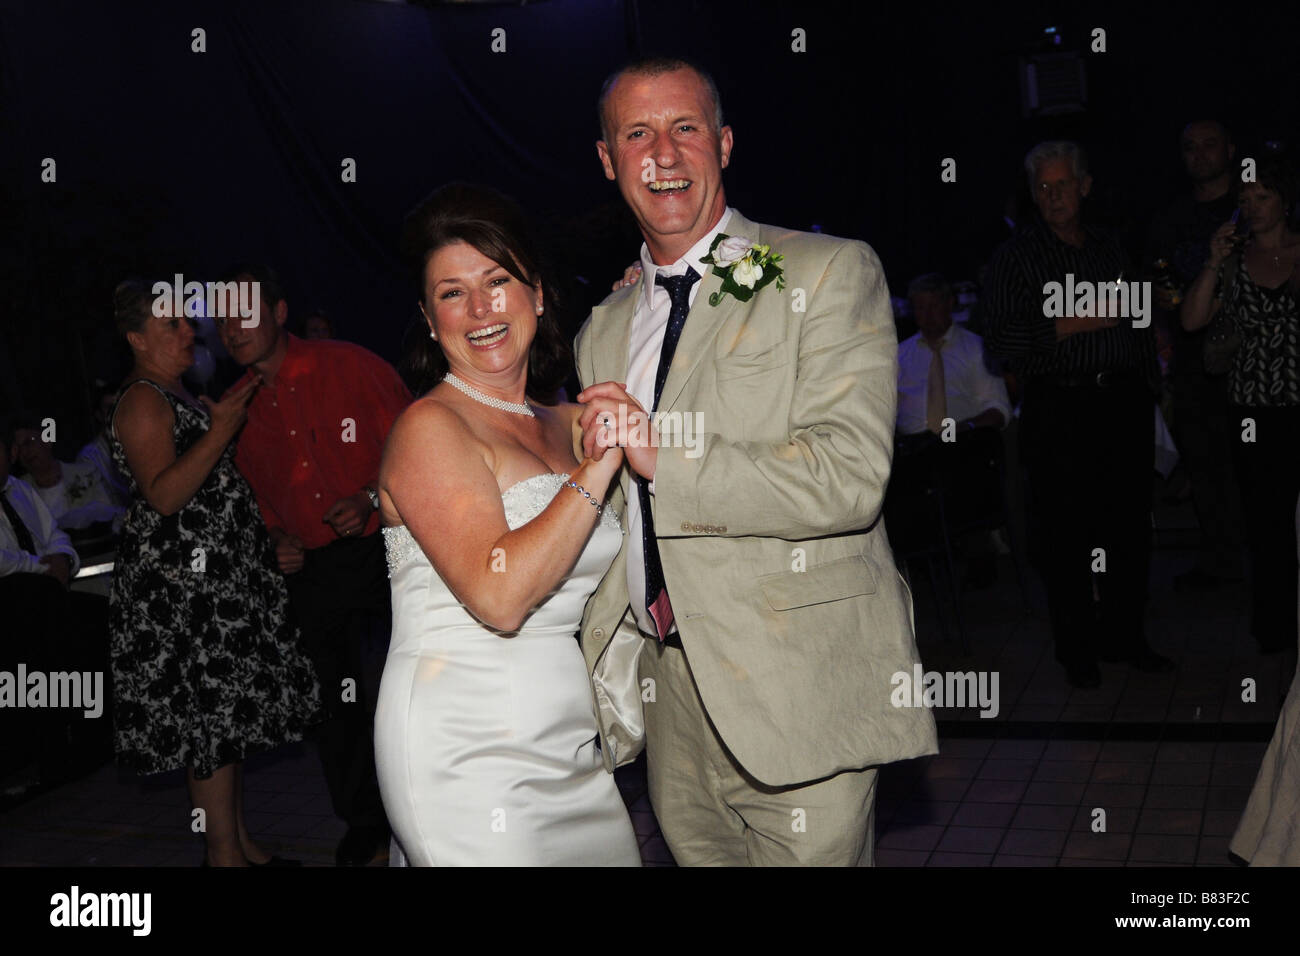 Una coppia di novelli sposi danza al loro ricevimento partito, West Yorkshire Modello rilasciato Foto Stock